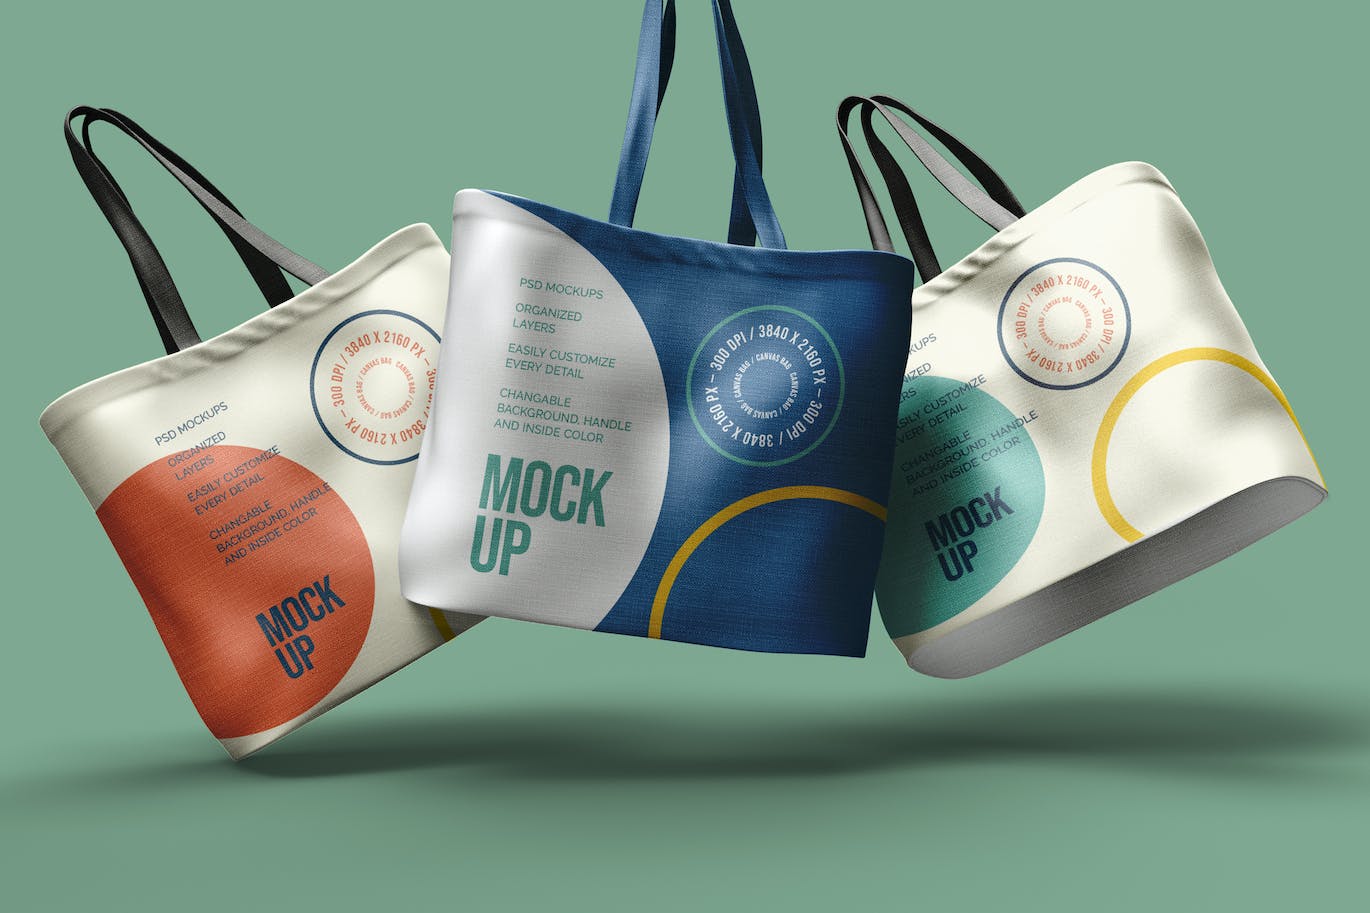 手提包设计效果图样机模板 Tote Bag Mockup 样机素材 第1张